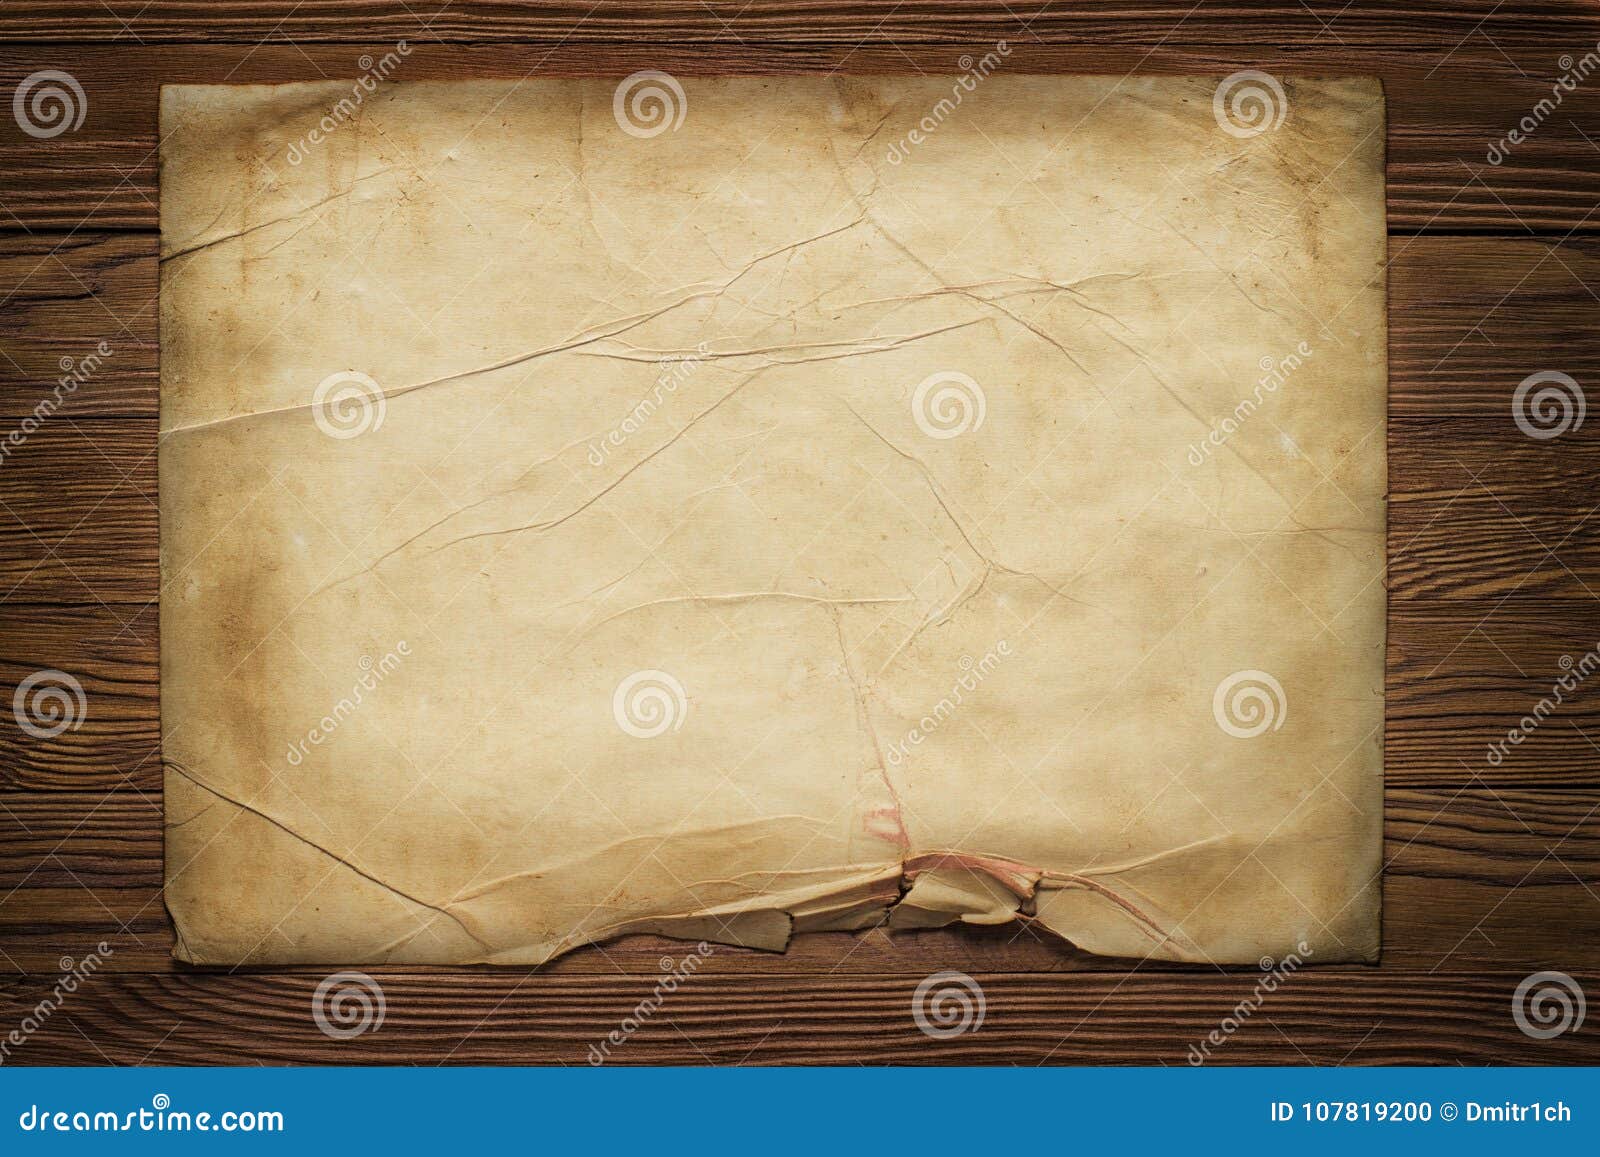 Горизонтальная бумага. Старинная бумага горизонтальная. Кусок старой бумаги. Старая бумага на деревянном фоне. Лист бумаги на деревянном фоне.